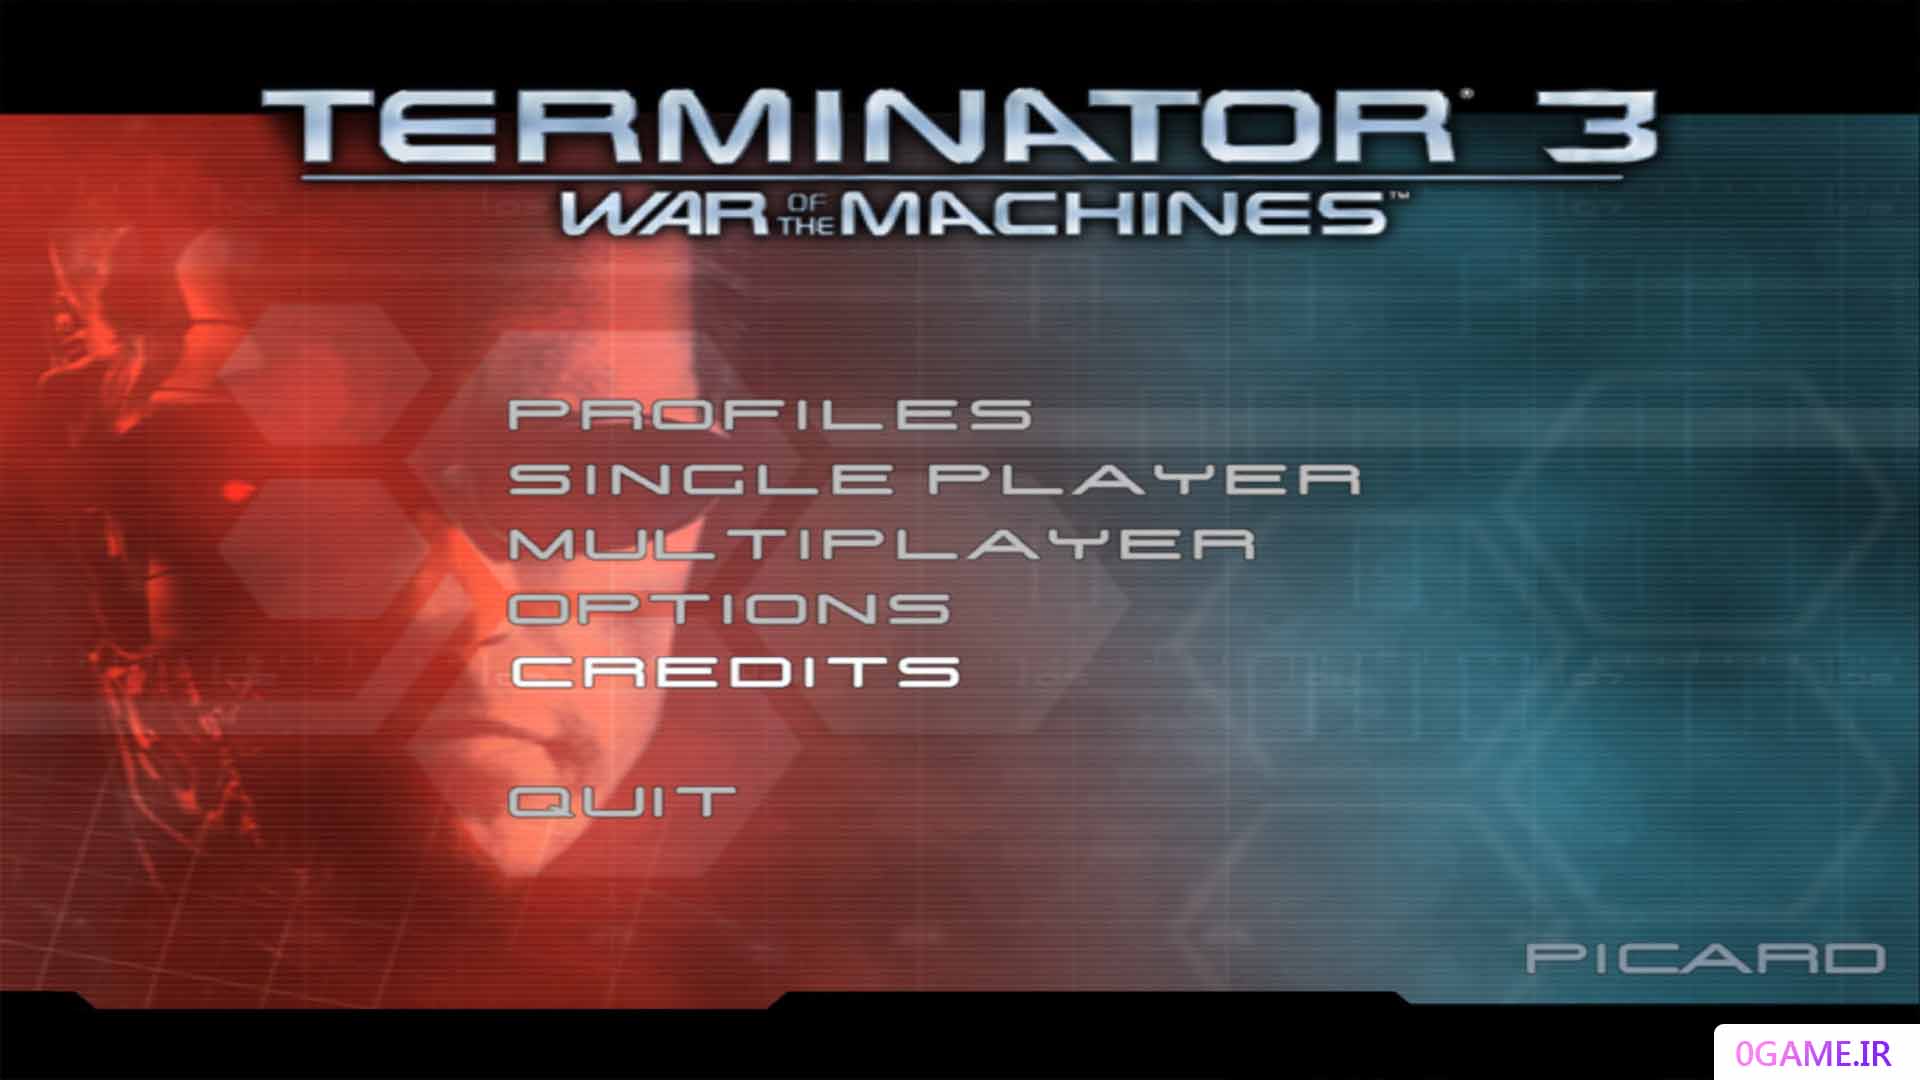 دانلود بازی نابودگر 3 (Terminator) نسخه کامل برای کامپیوتر